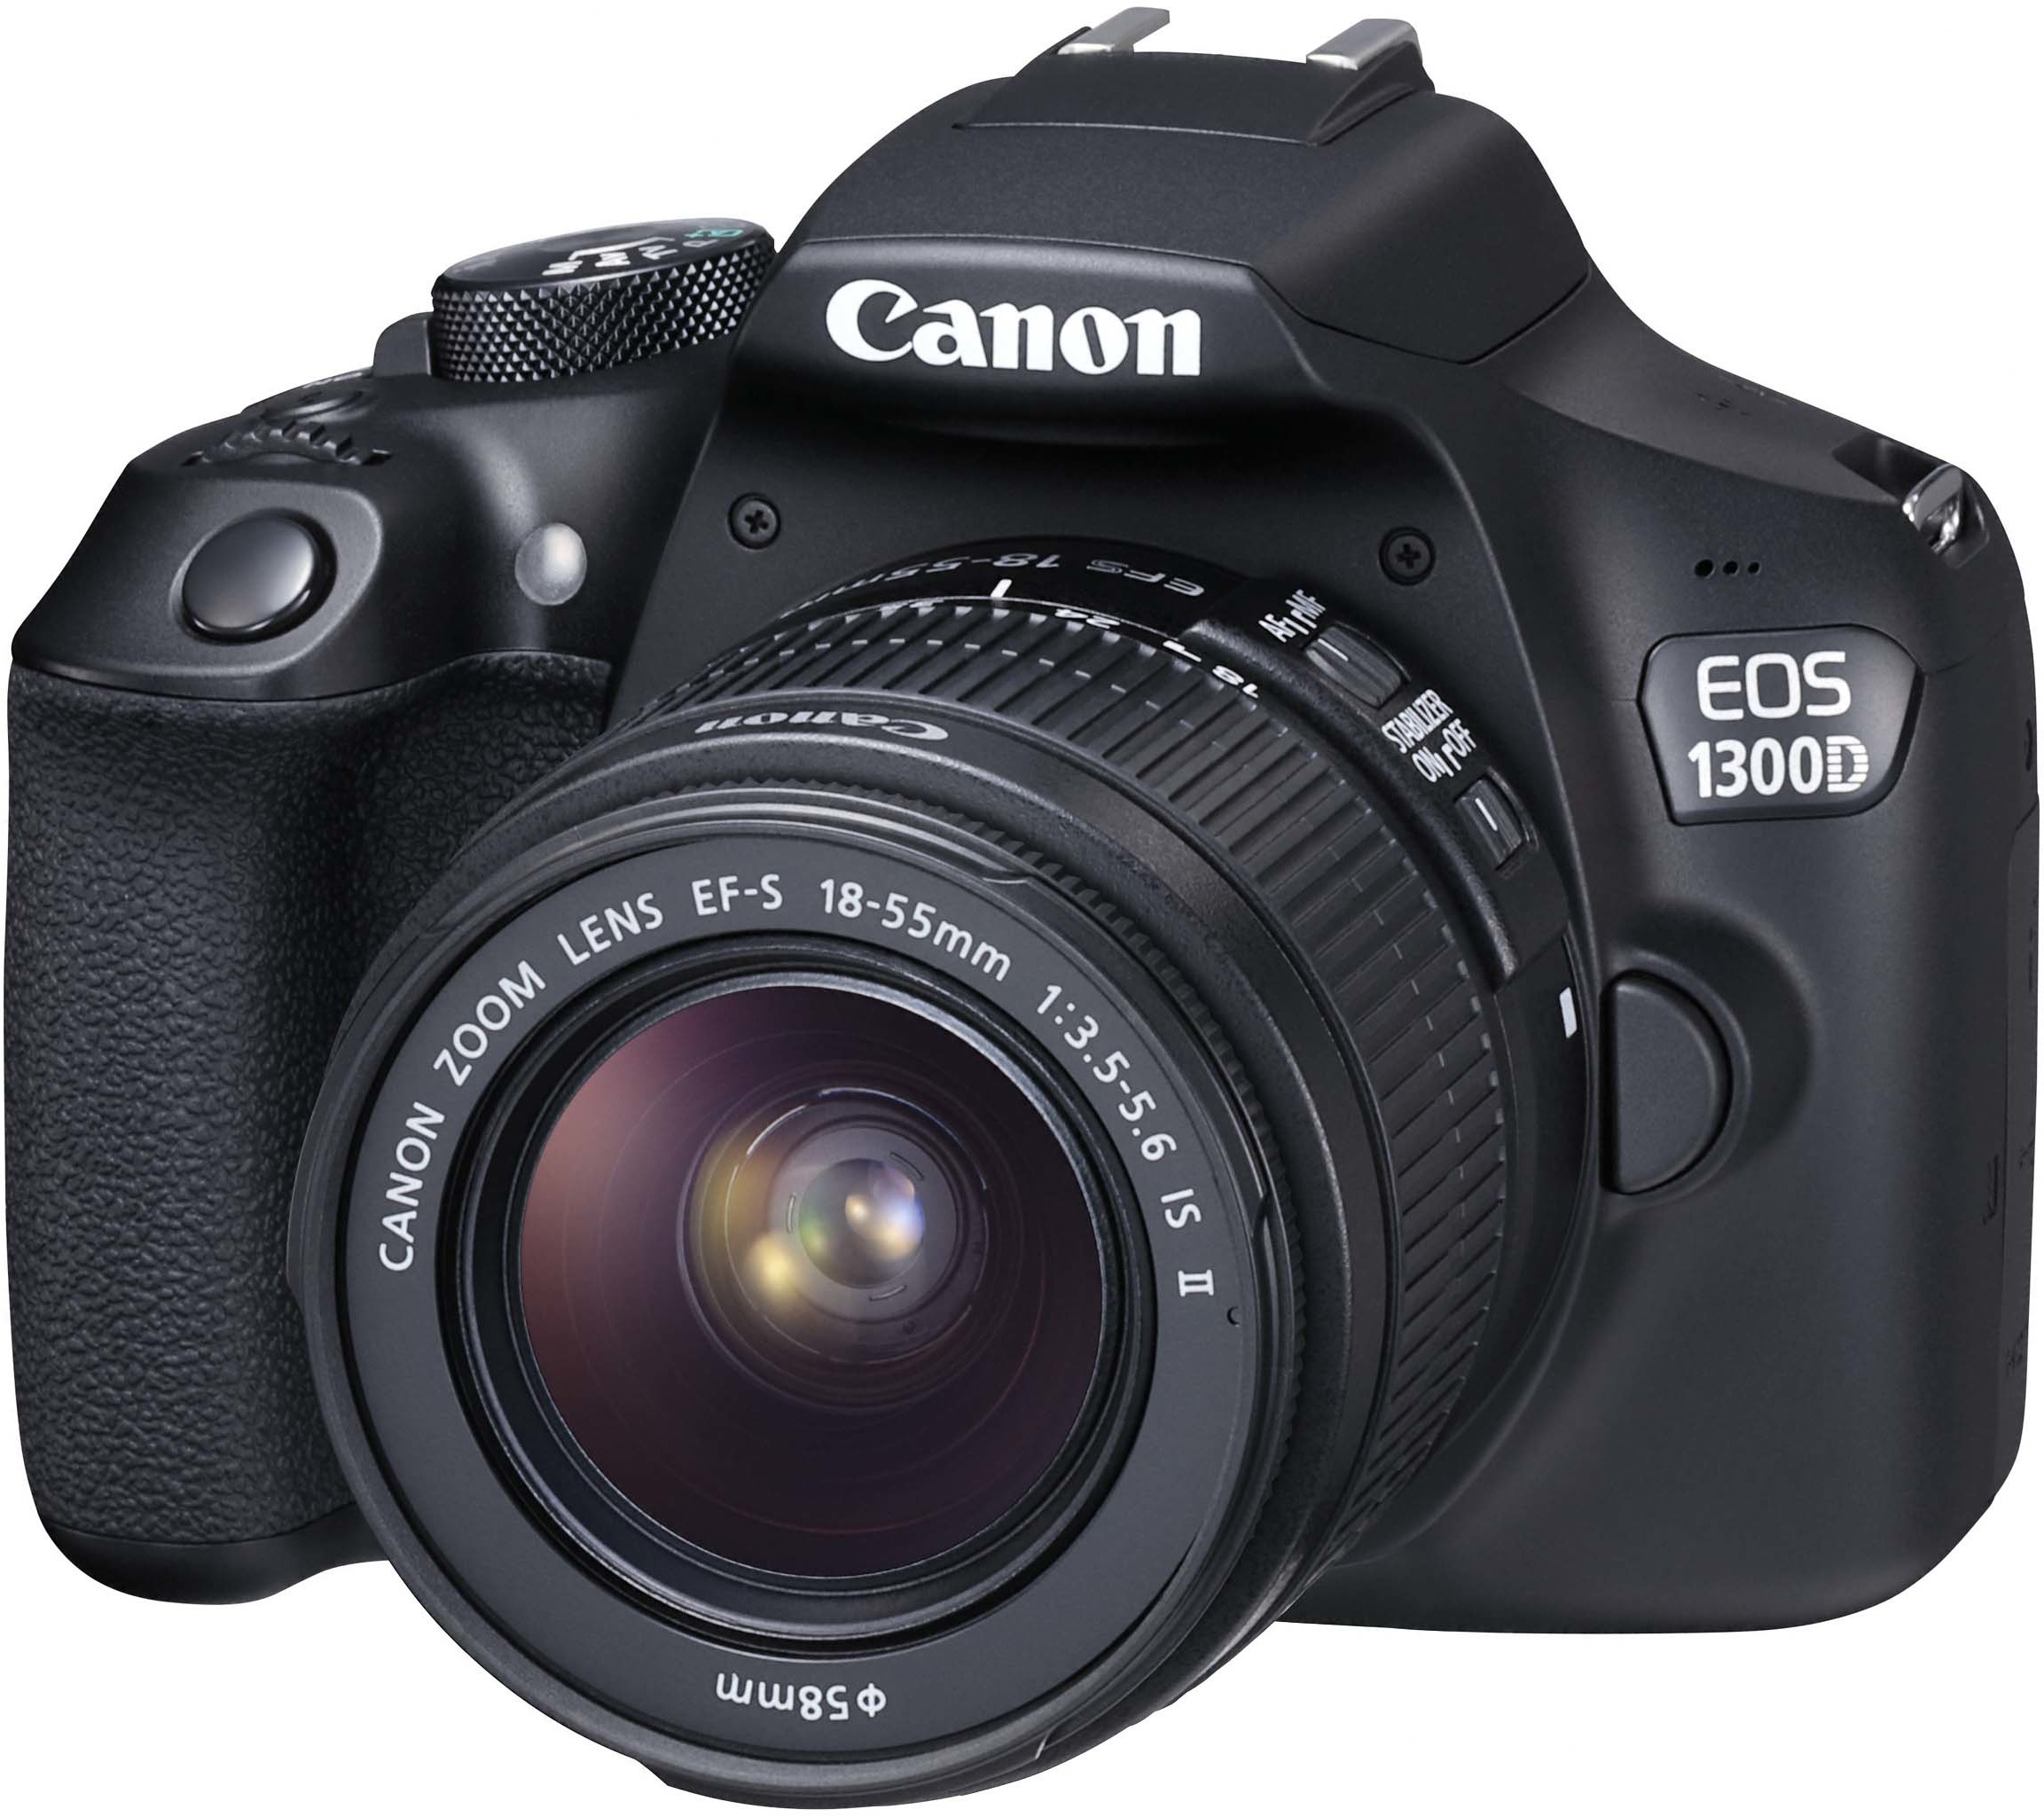 De Canon EOS-1300D is een kleine en lichte D-SLR met 18 megapixels en full HD film mogelijkheid.Prima voor in de fotostudio.BESTE KOOP CONSUMENTENBOND MEI 2017.